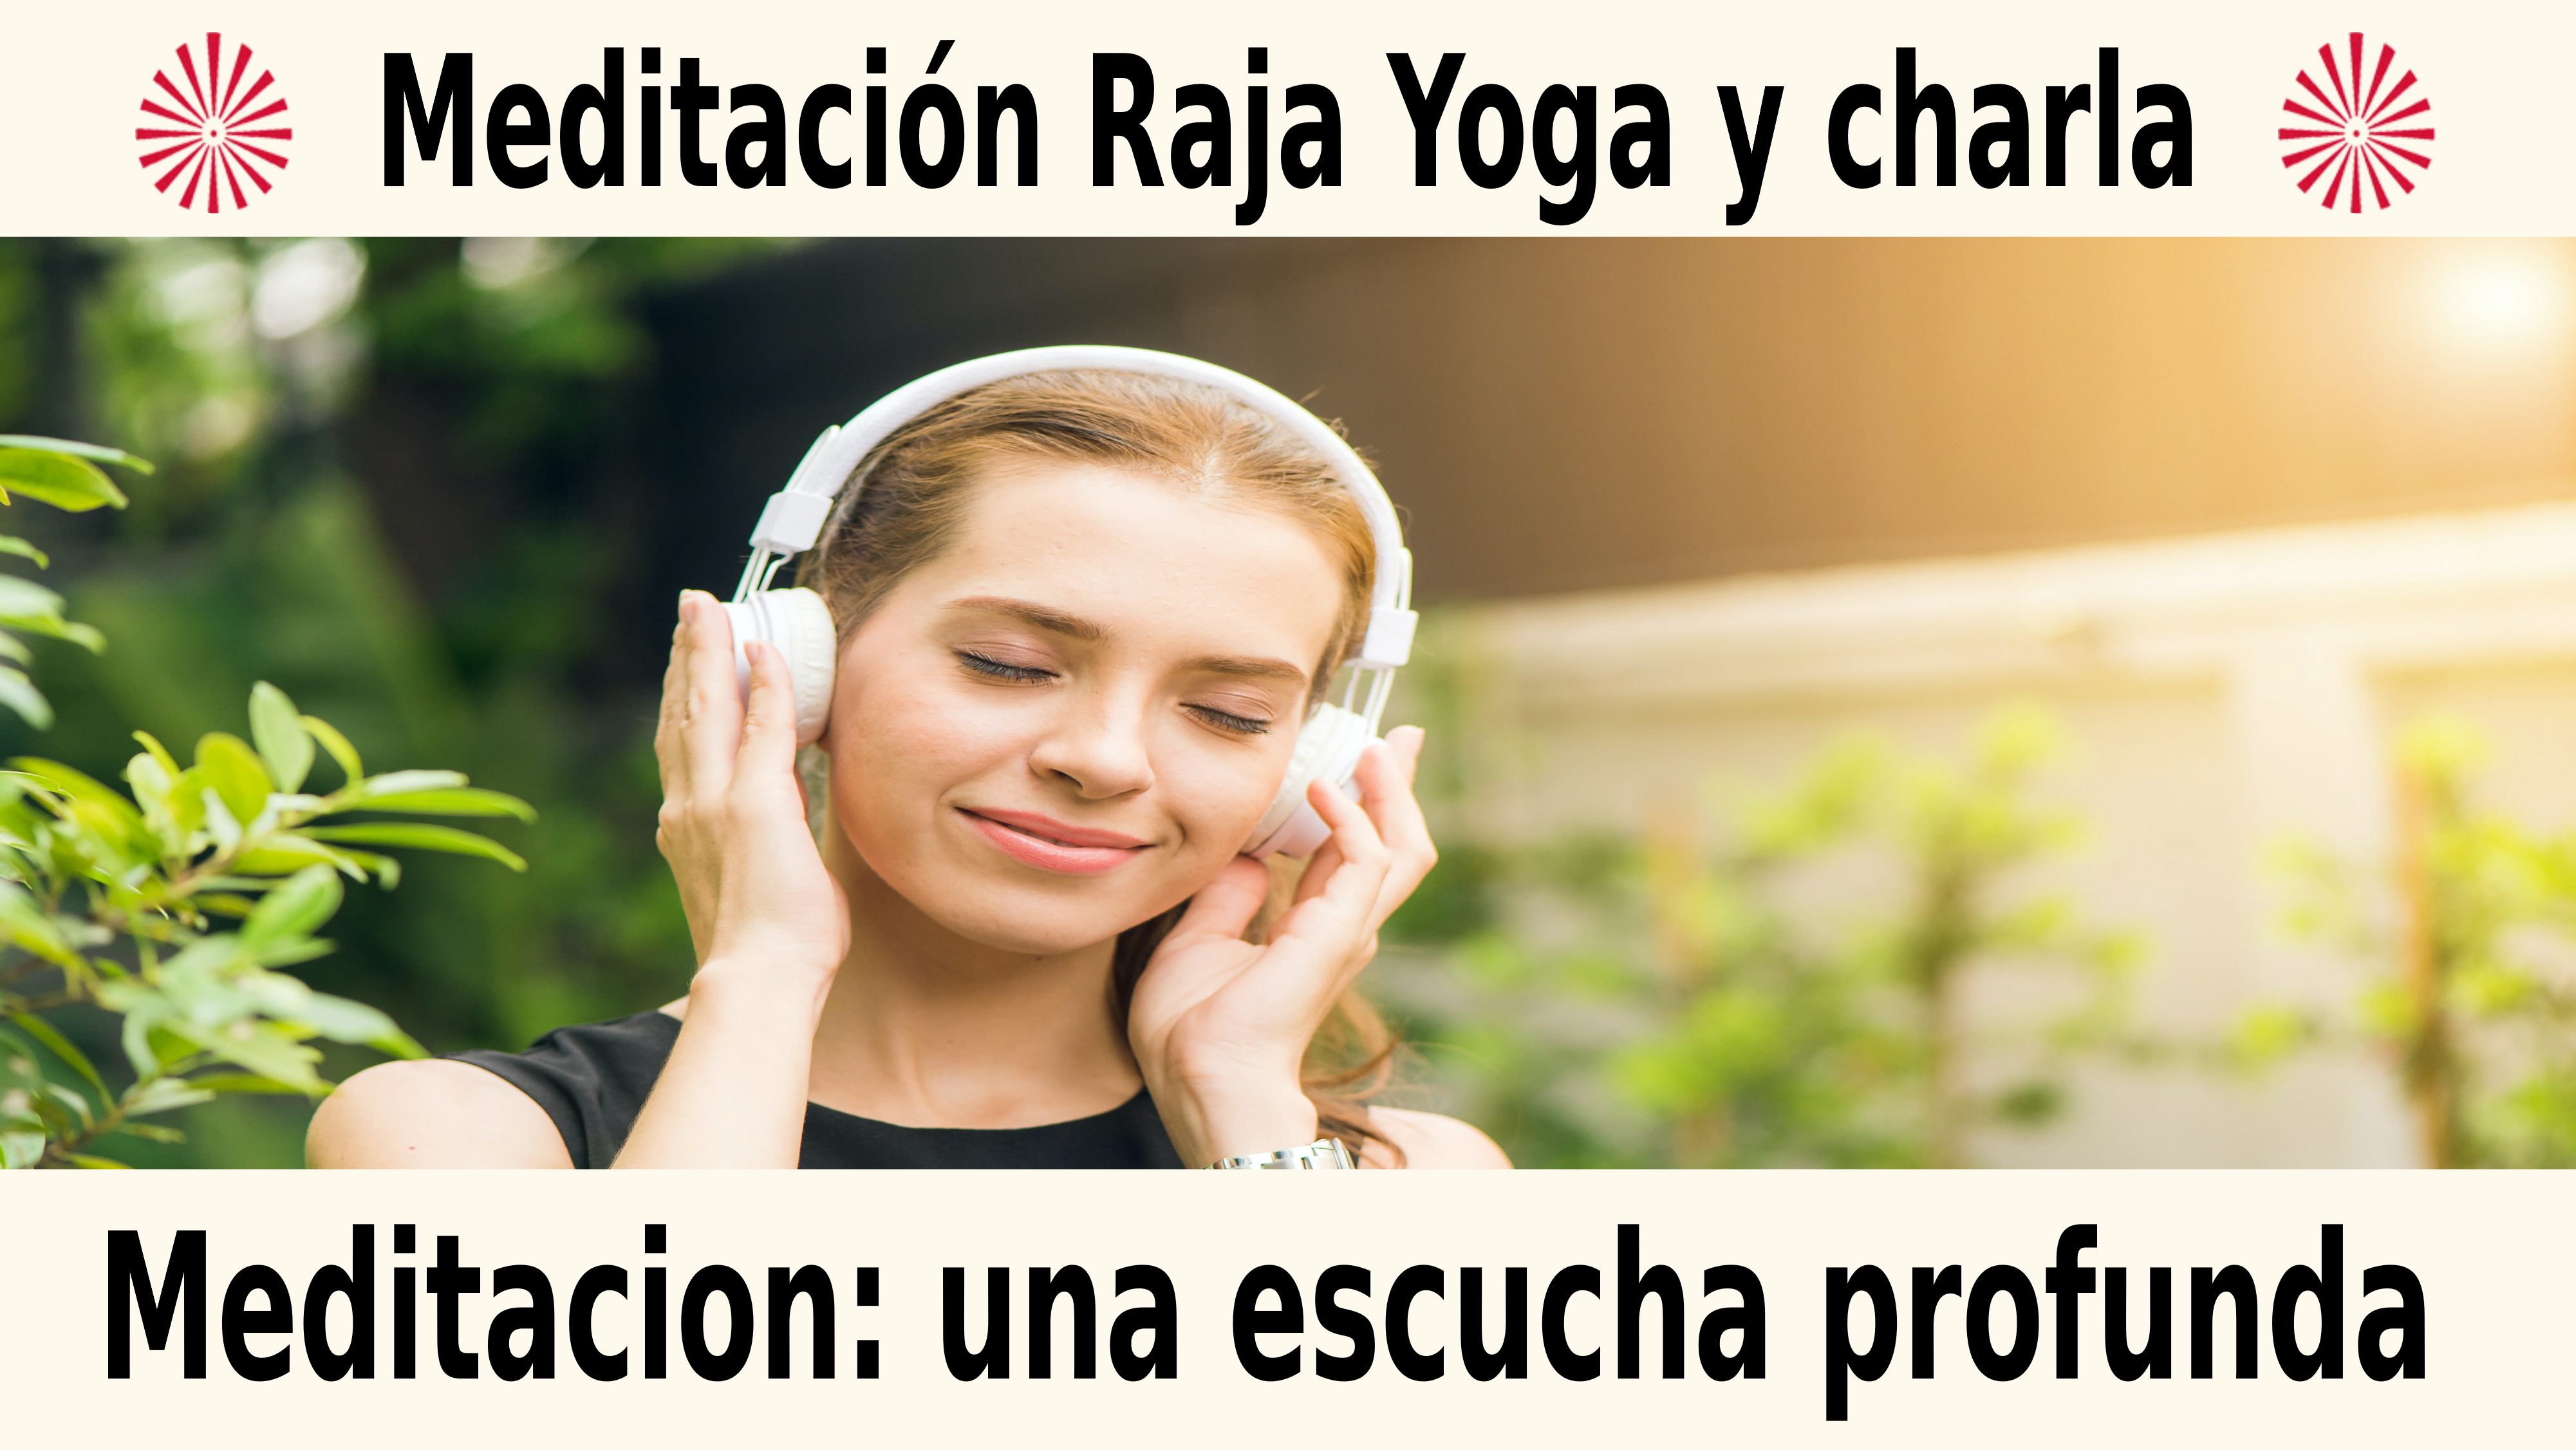 Meditación Raja Yoga y charla: Meditación una escucha profunda (11 Diciembre 2020) On-line desde Barcelona